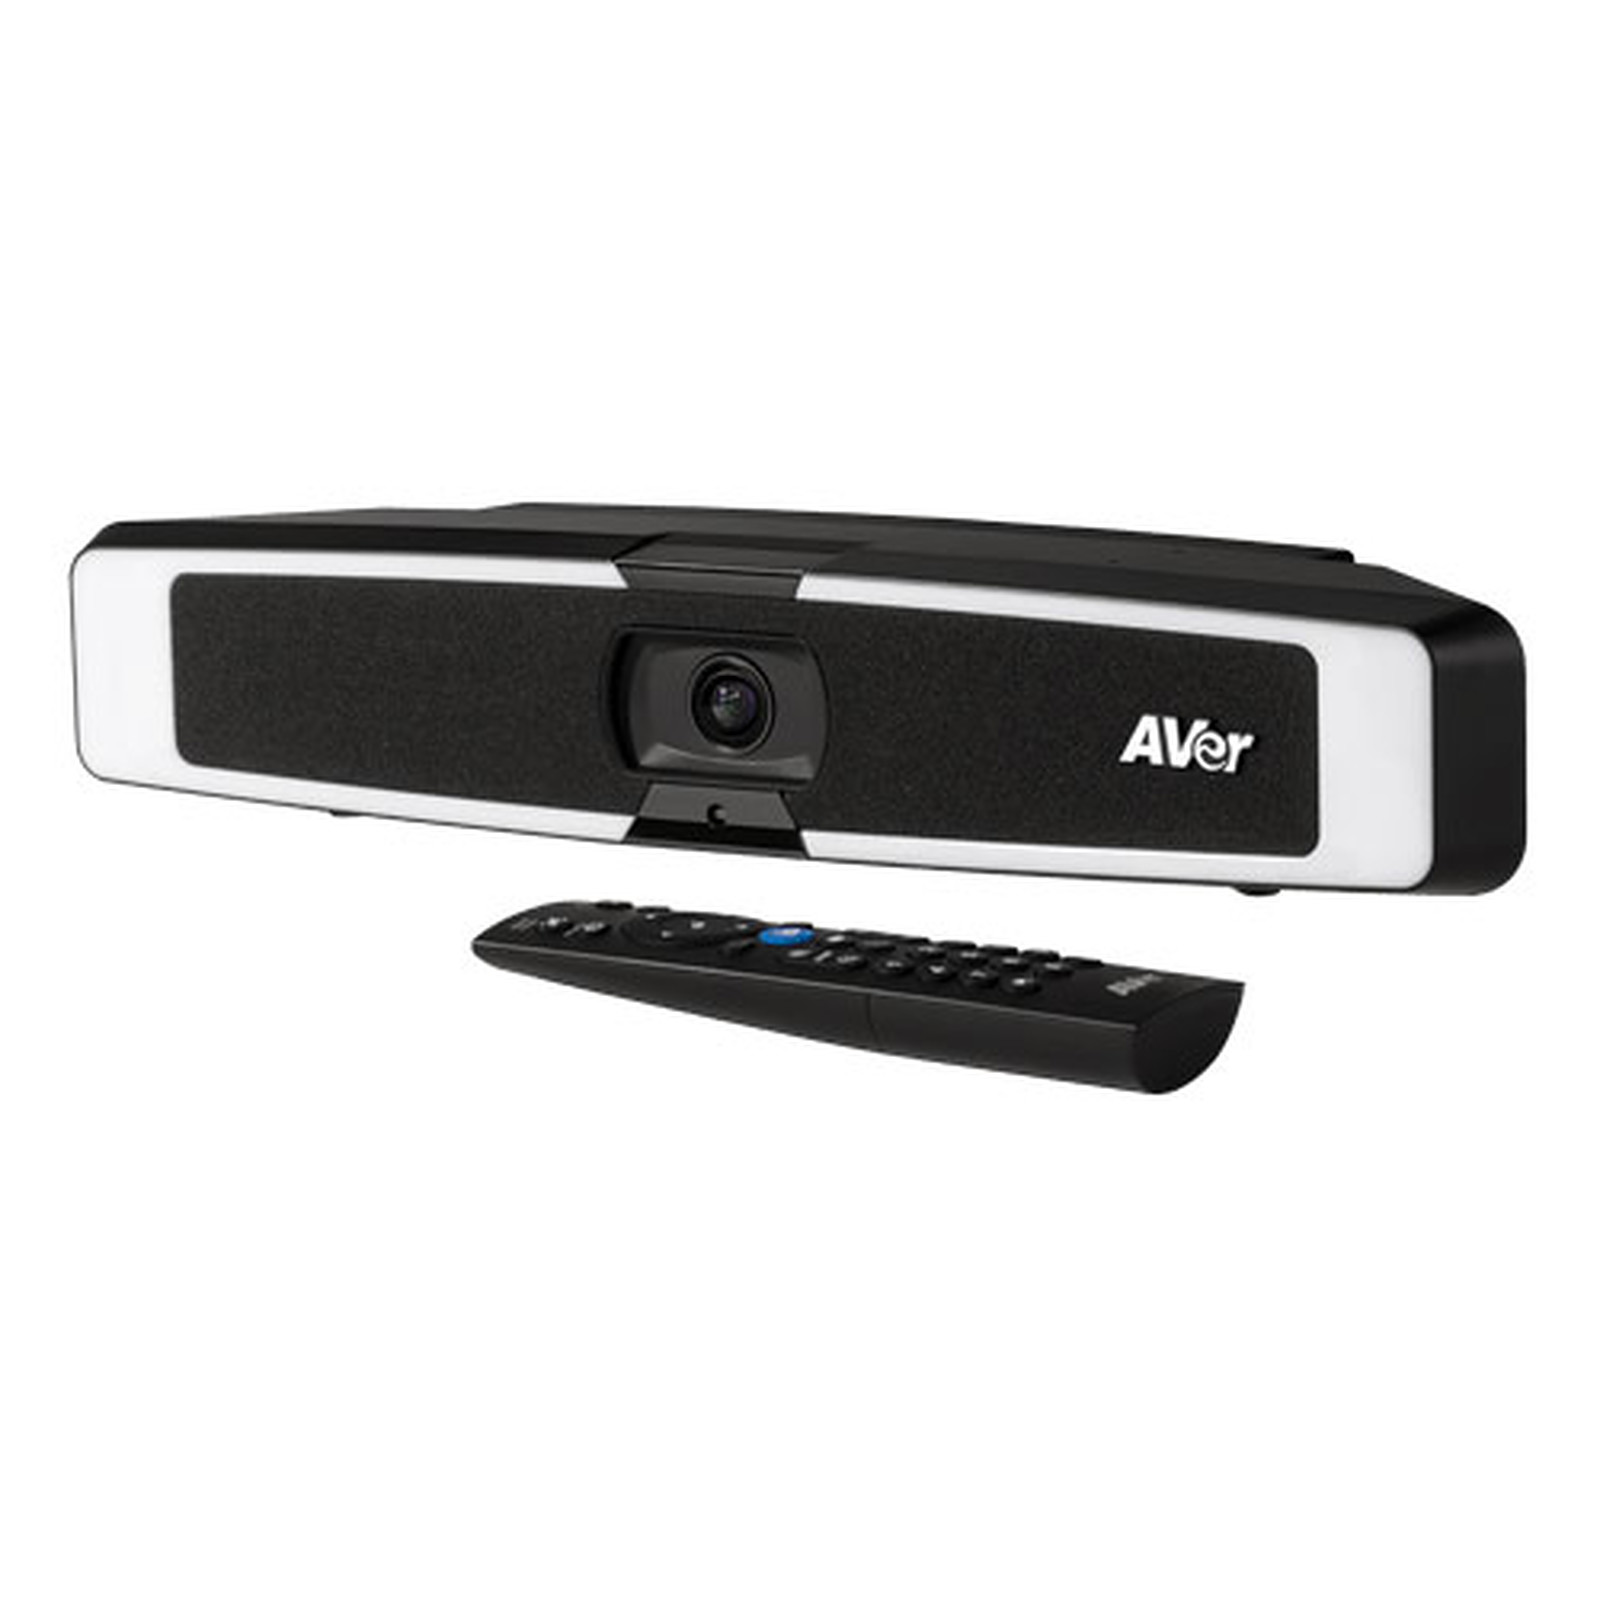 AVer VB130 - Webcam AVer